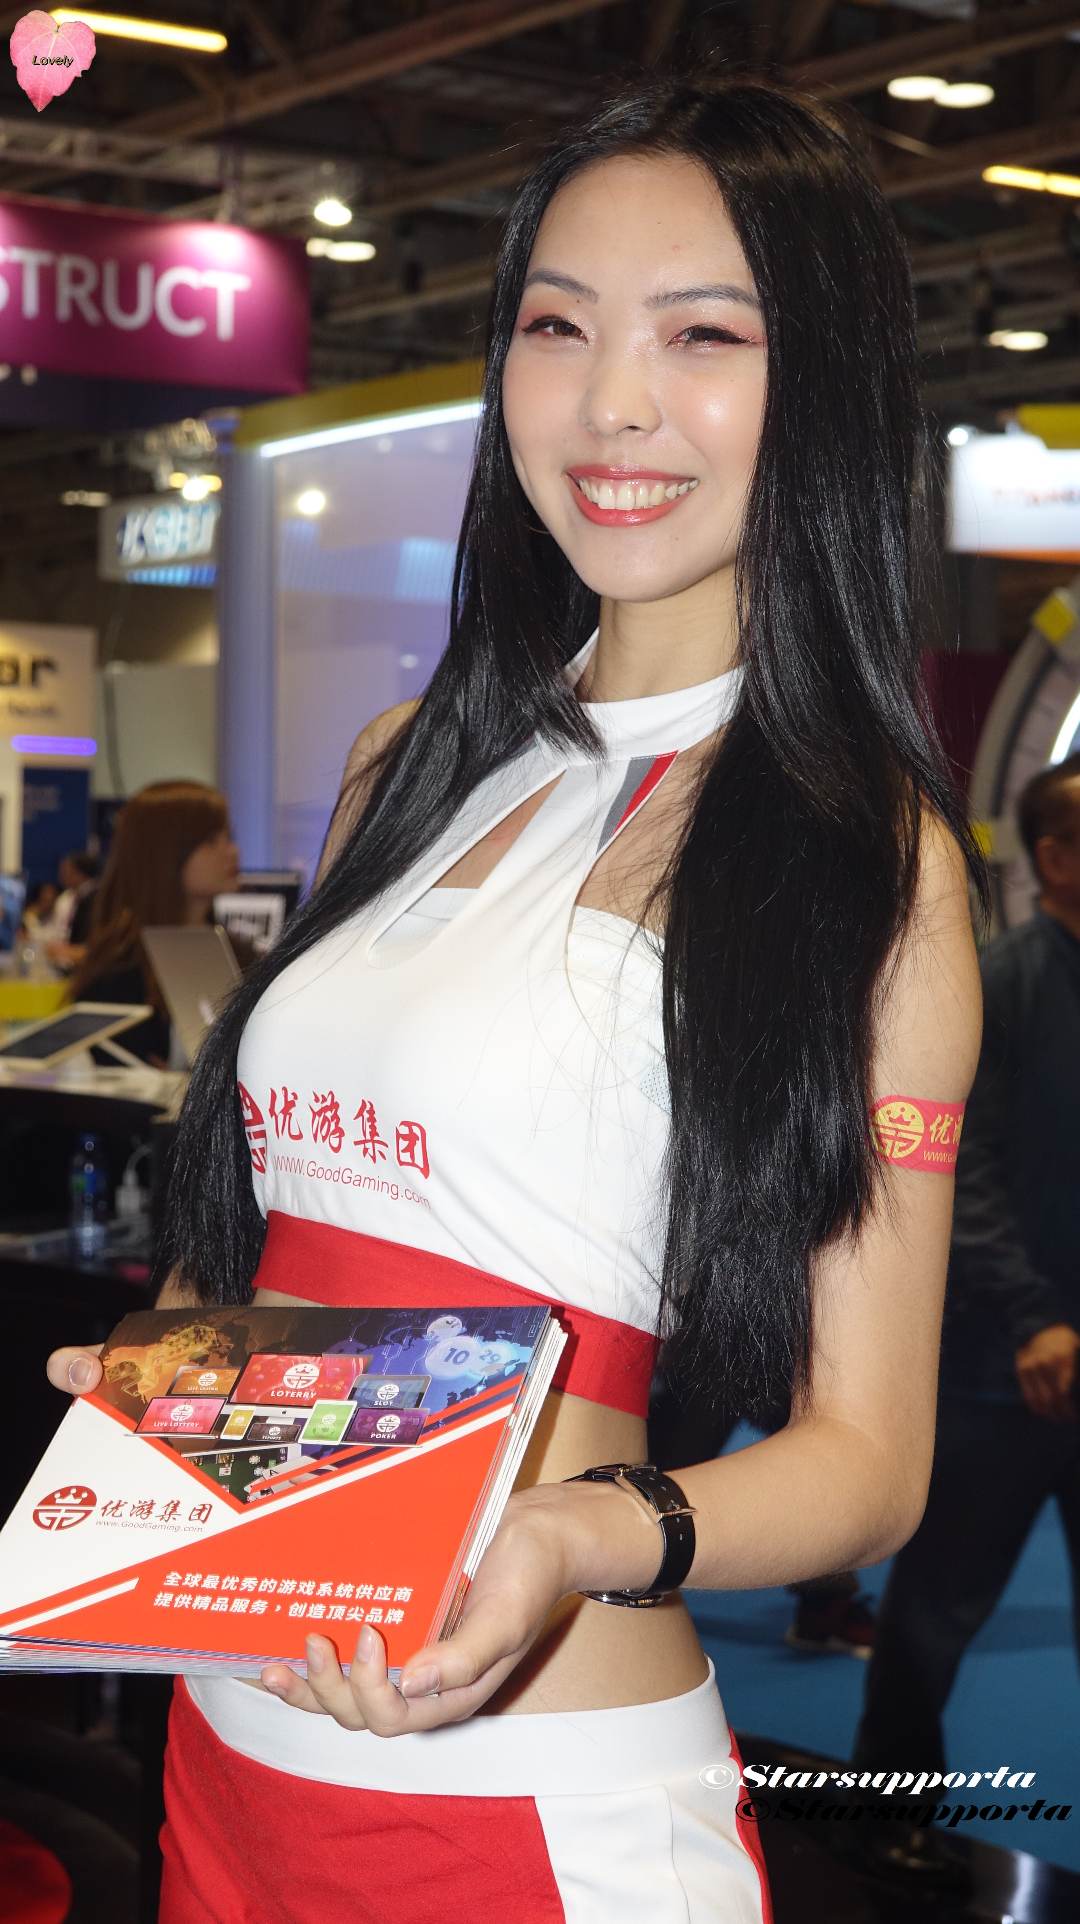 20180515-16 亞洲國際娛樂展 G2E Asia 2018 - Good Gaming 優游集團 @ 澳門威尼斯人